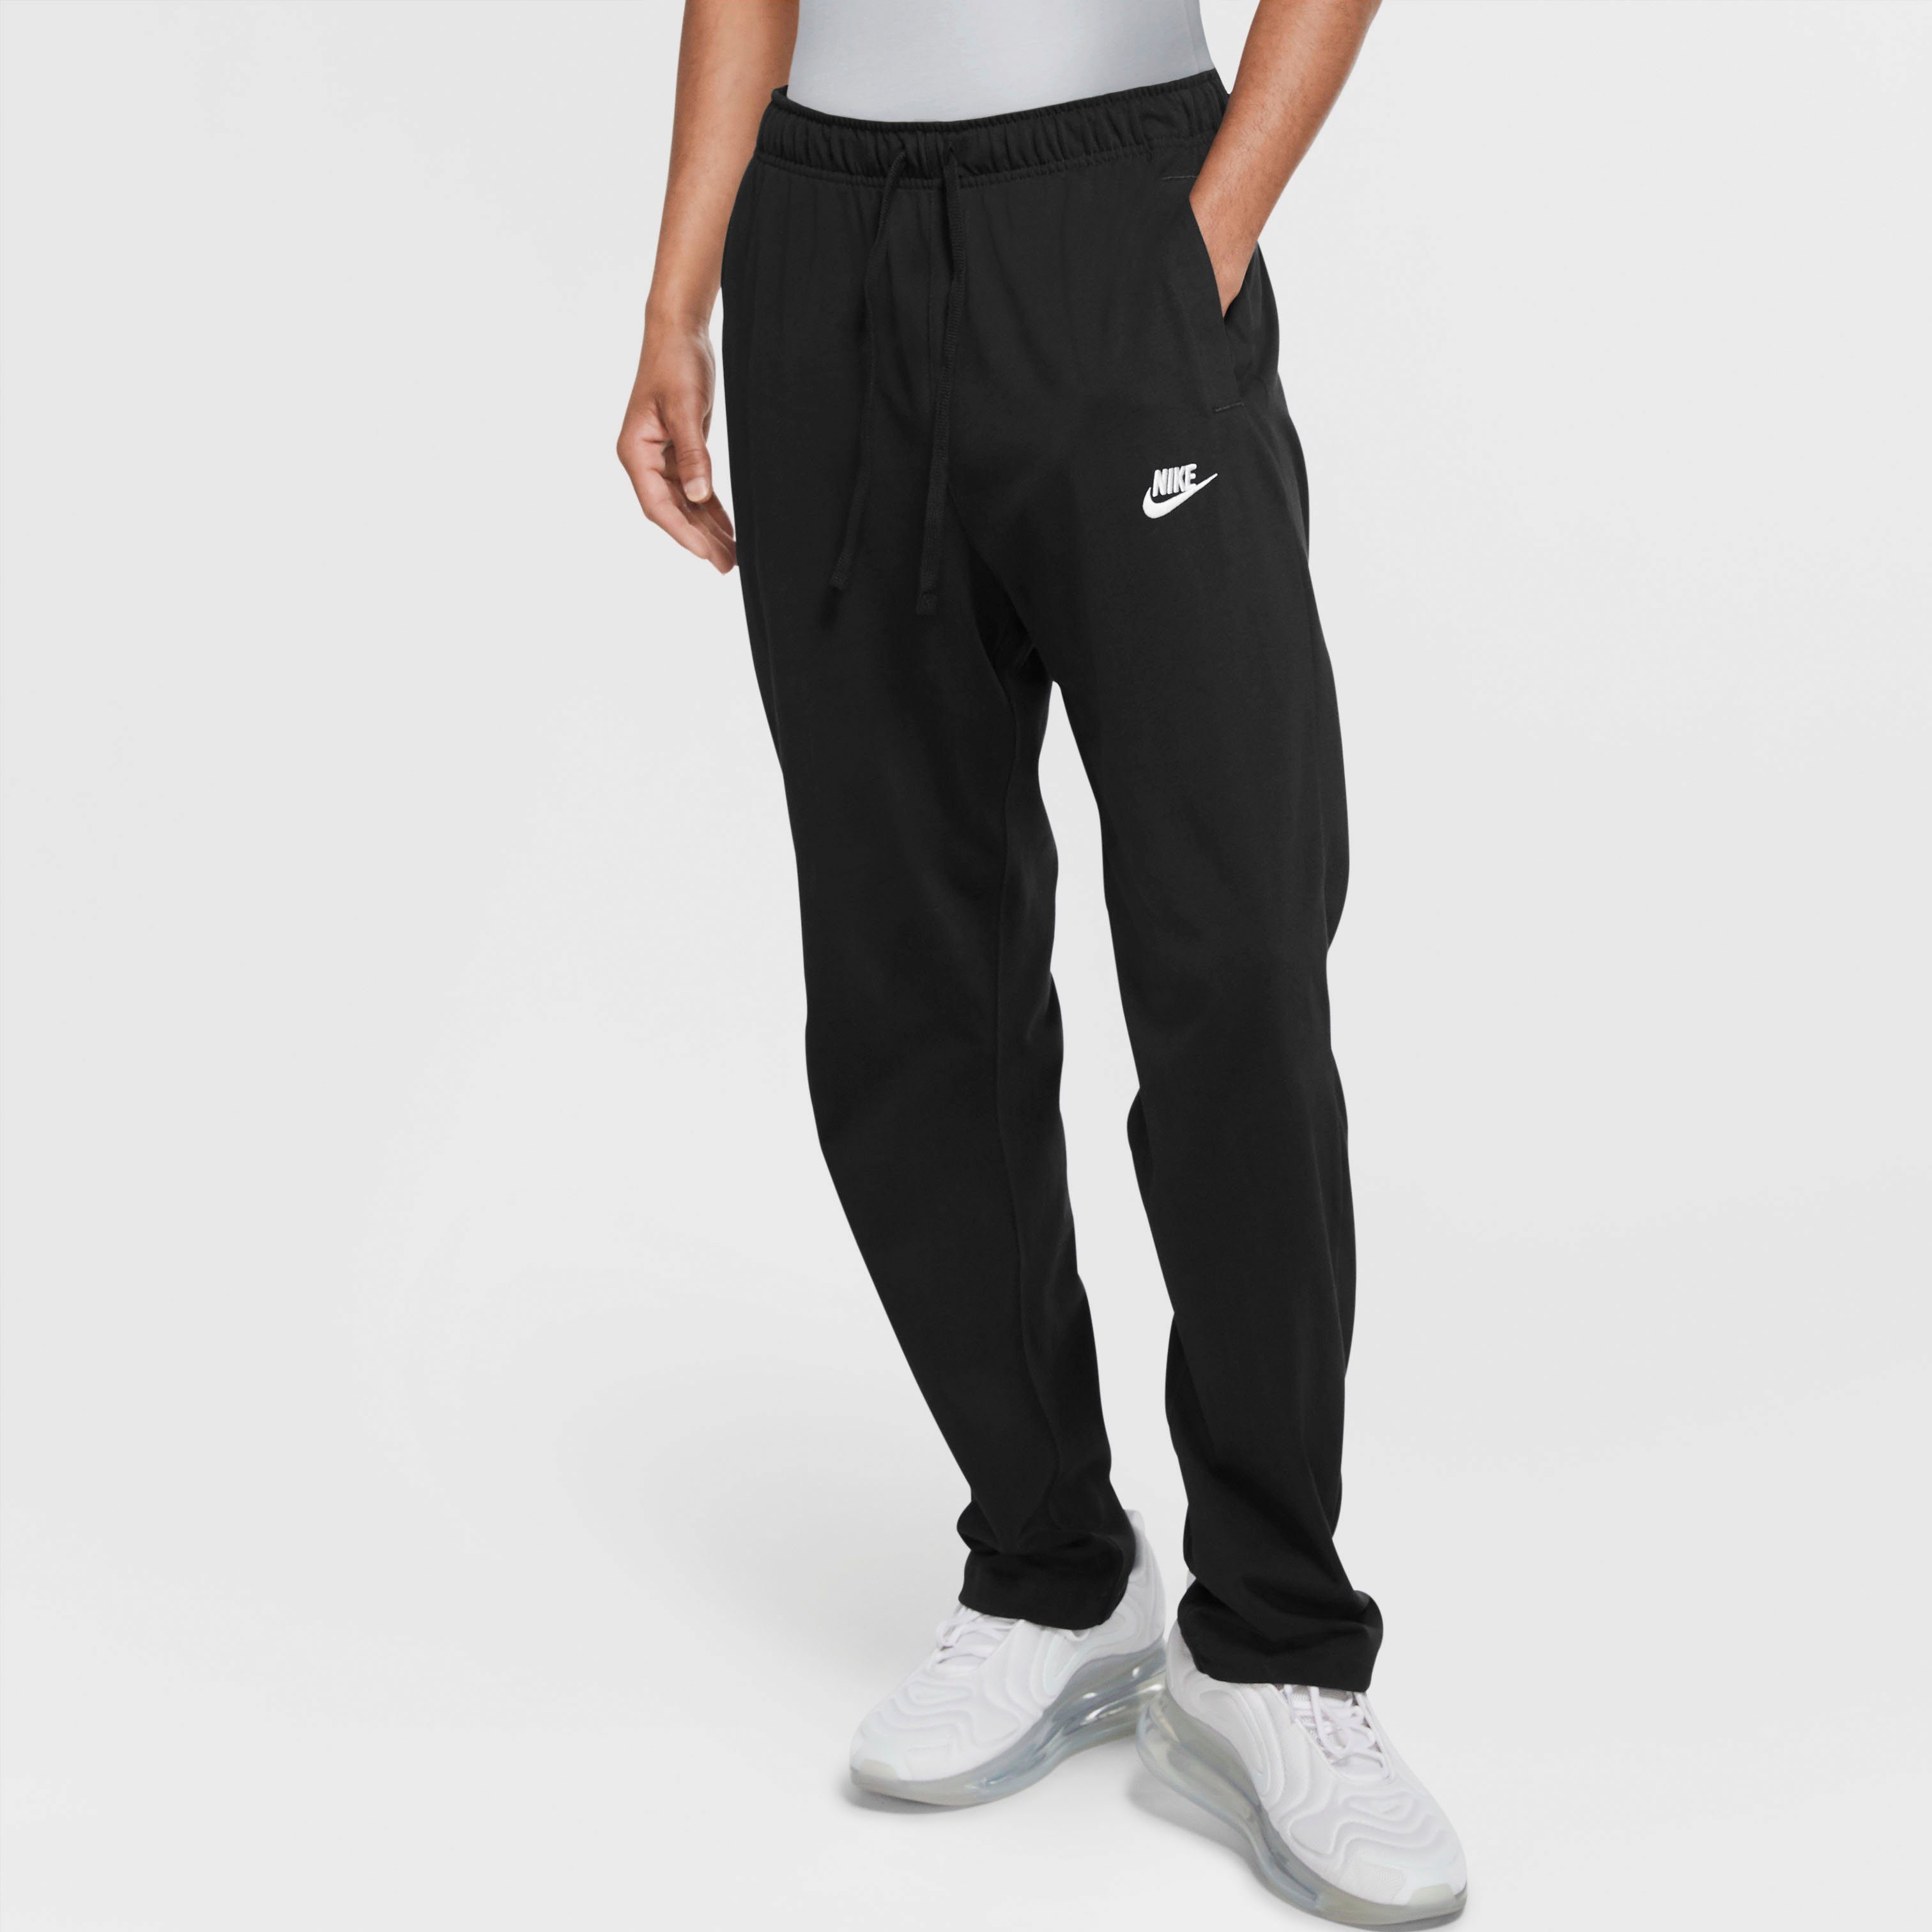 Nike Jogginghosen » Nike Jogger online kaufen | OTTO